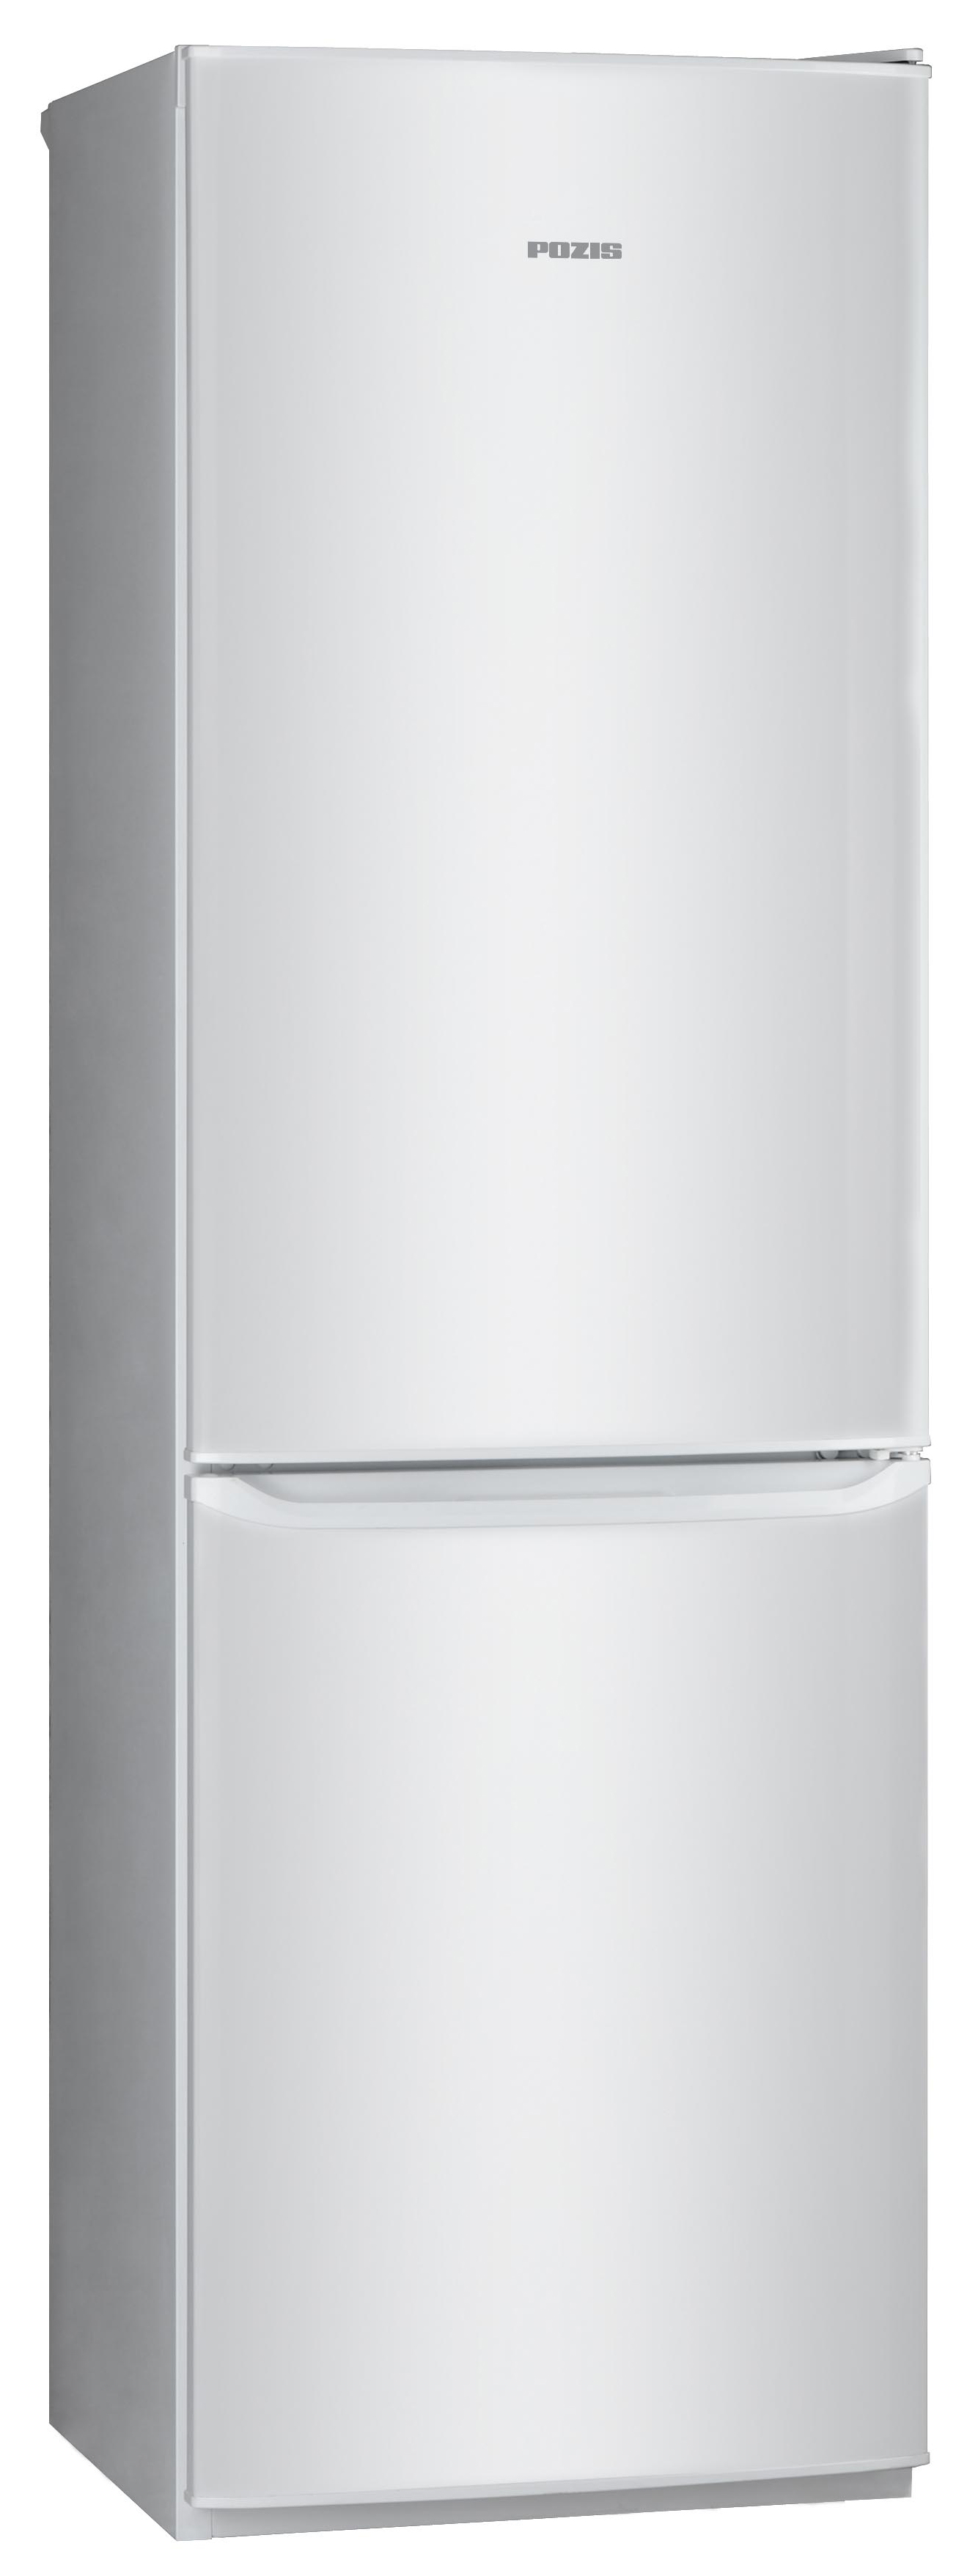 Холодильник POZIS RD-149 серебристый холодильник pozis rk 101 серебристый